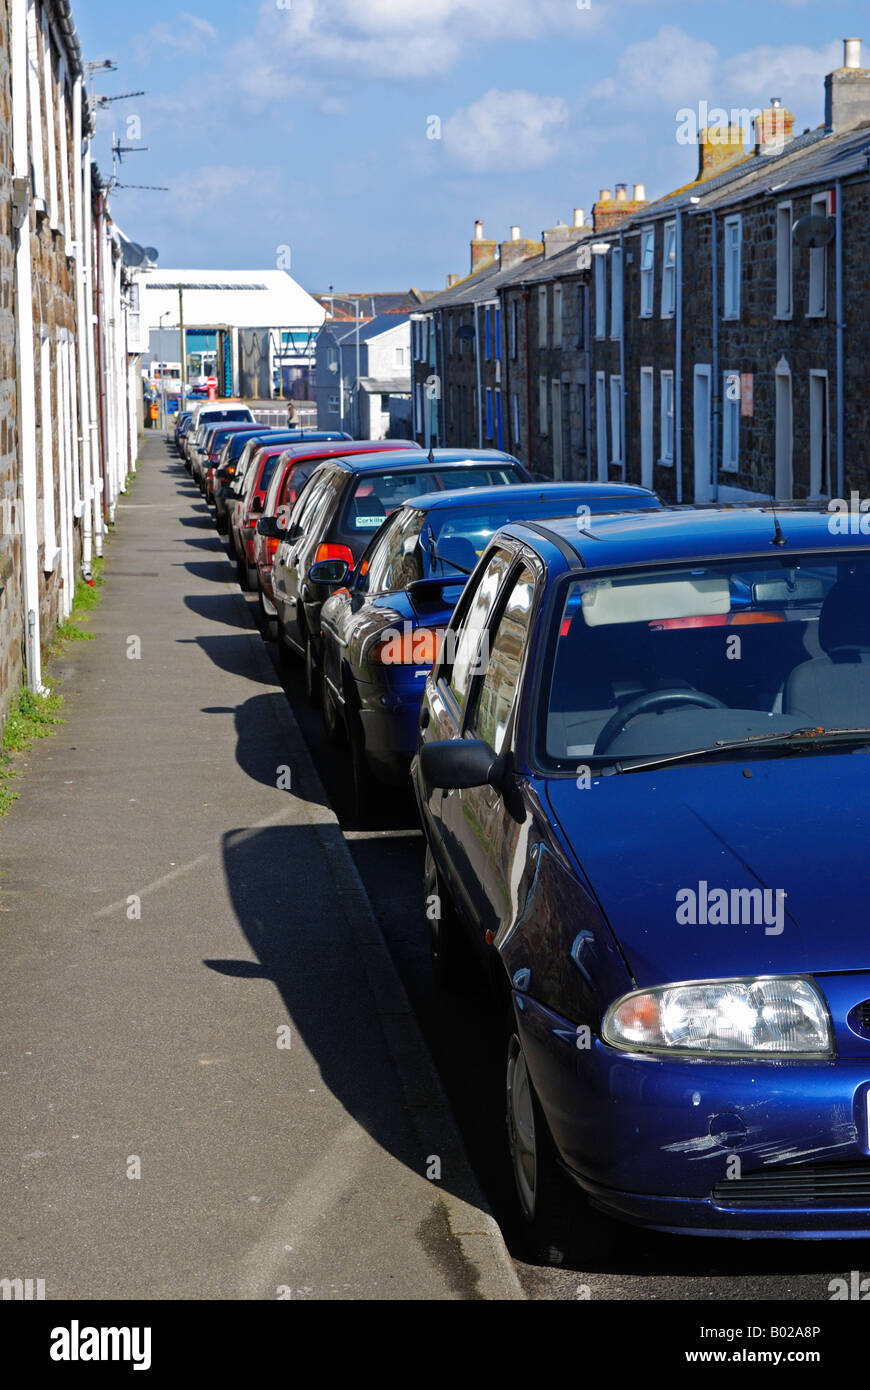 Una fila di automobili parcheggiate in una strada in camborne,cornwall,Inghilterra Foto Stock